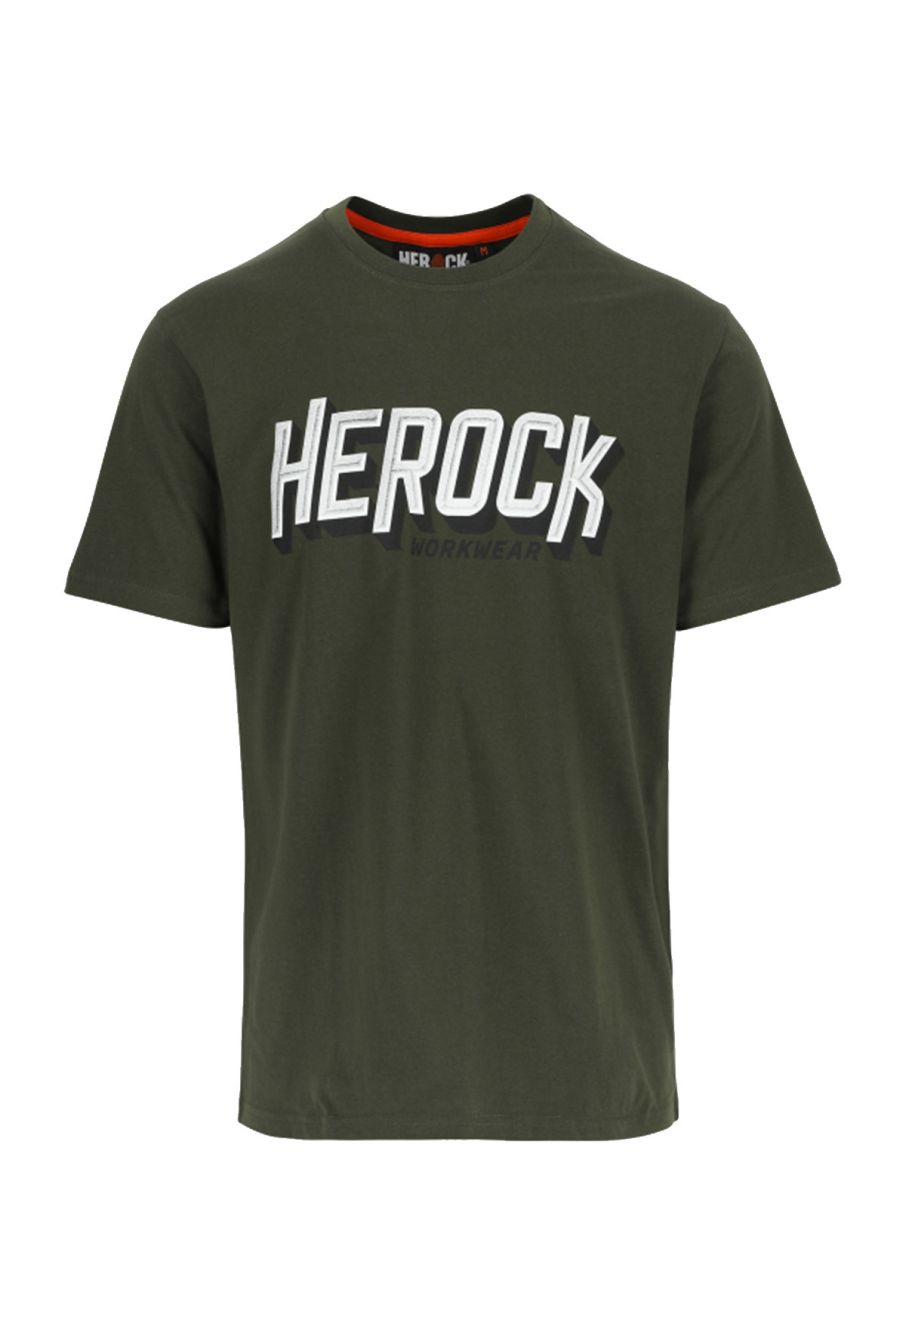 Khaki - T-shirt Dark Herock Logo